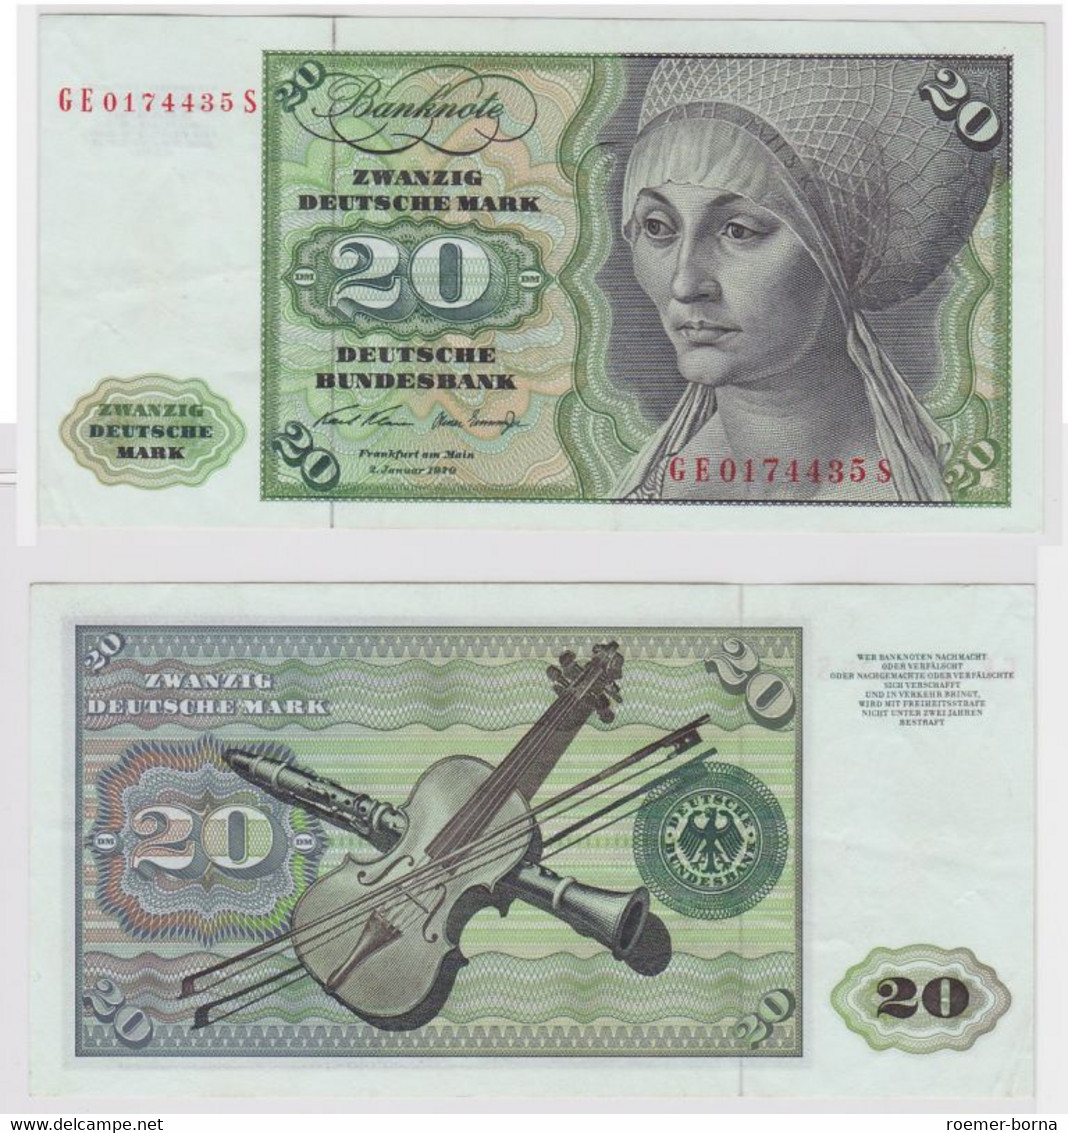 T148308 Banknote 20 DM Deutsche Mark Ro. 271b Schein 2.Jan. 1970 KN GE 0174435 S - 20 Deutsche Mark